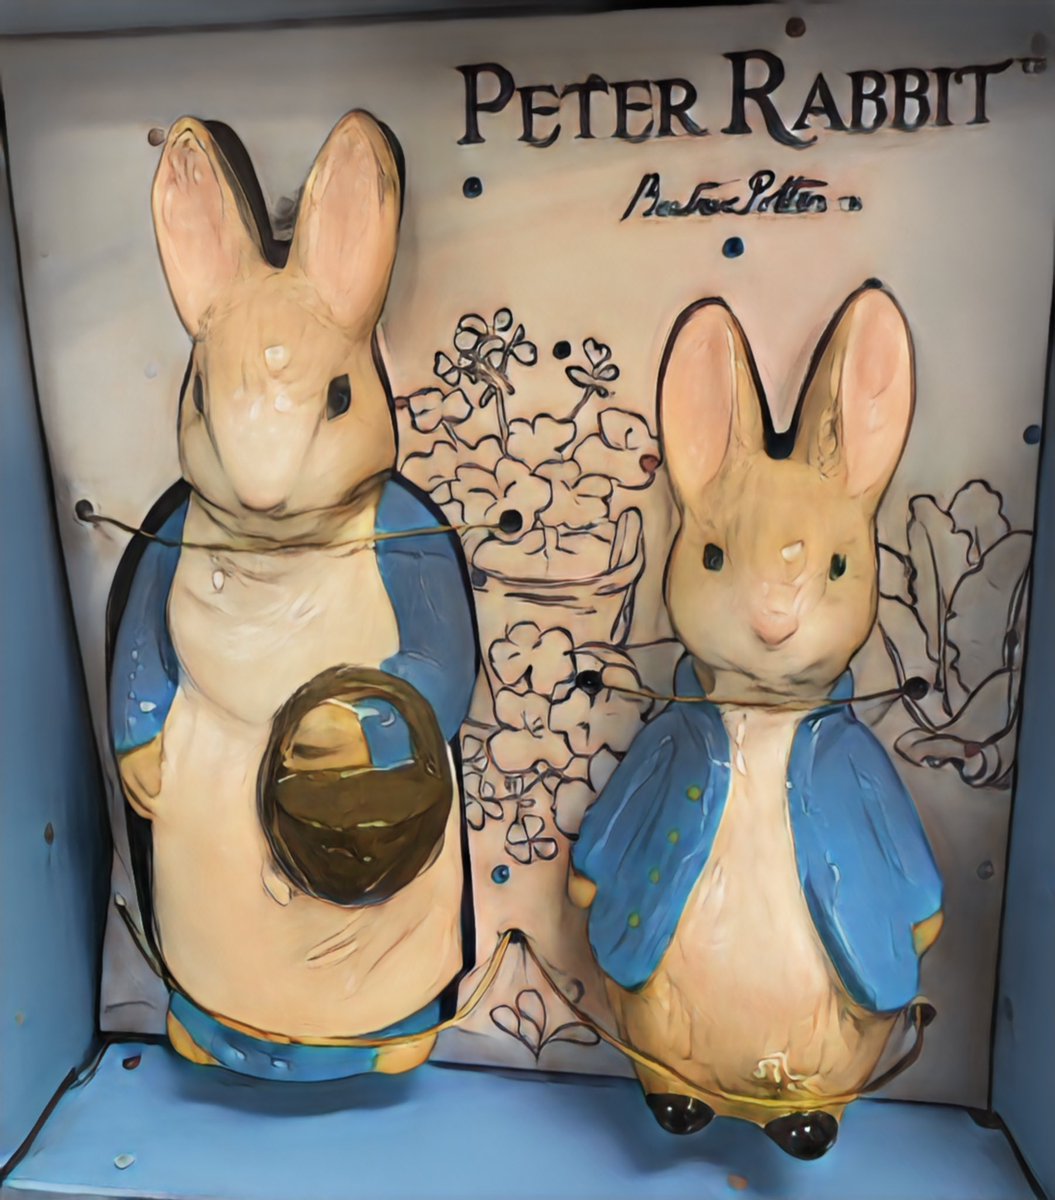 Rabbit, Rabbit
#april1st #sayitaloud #rabbitrabbit #goodluck #peterrabbit #beayrixpotter #superstition